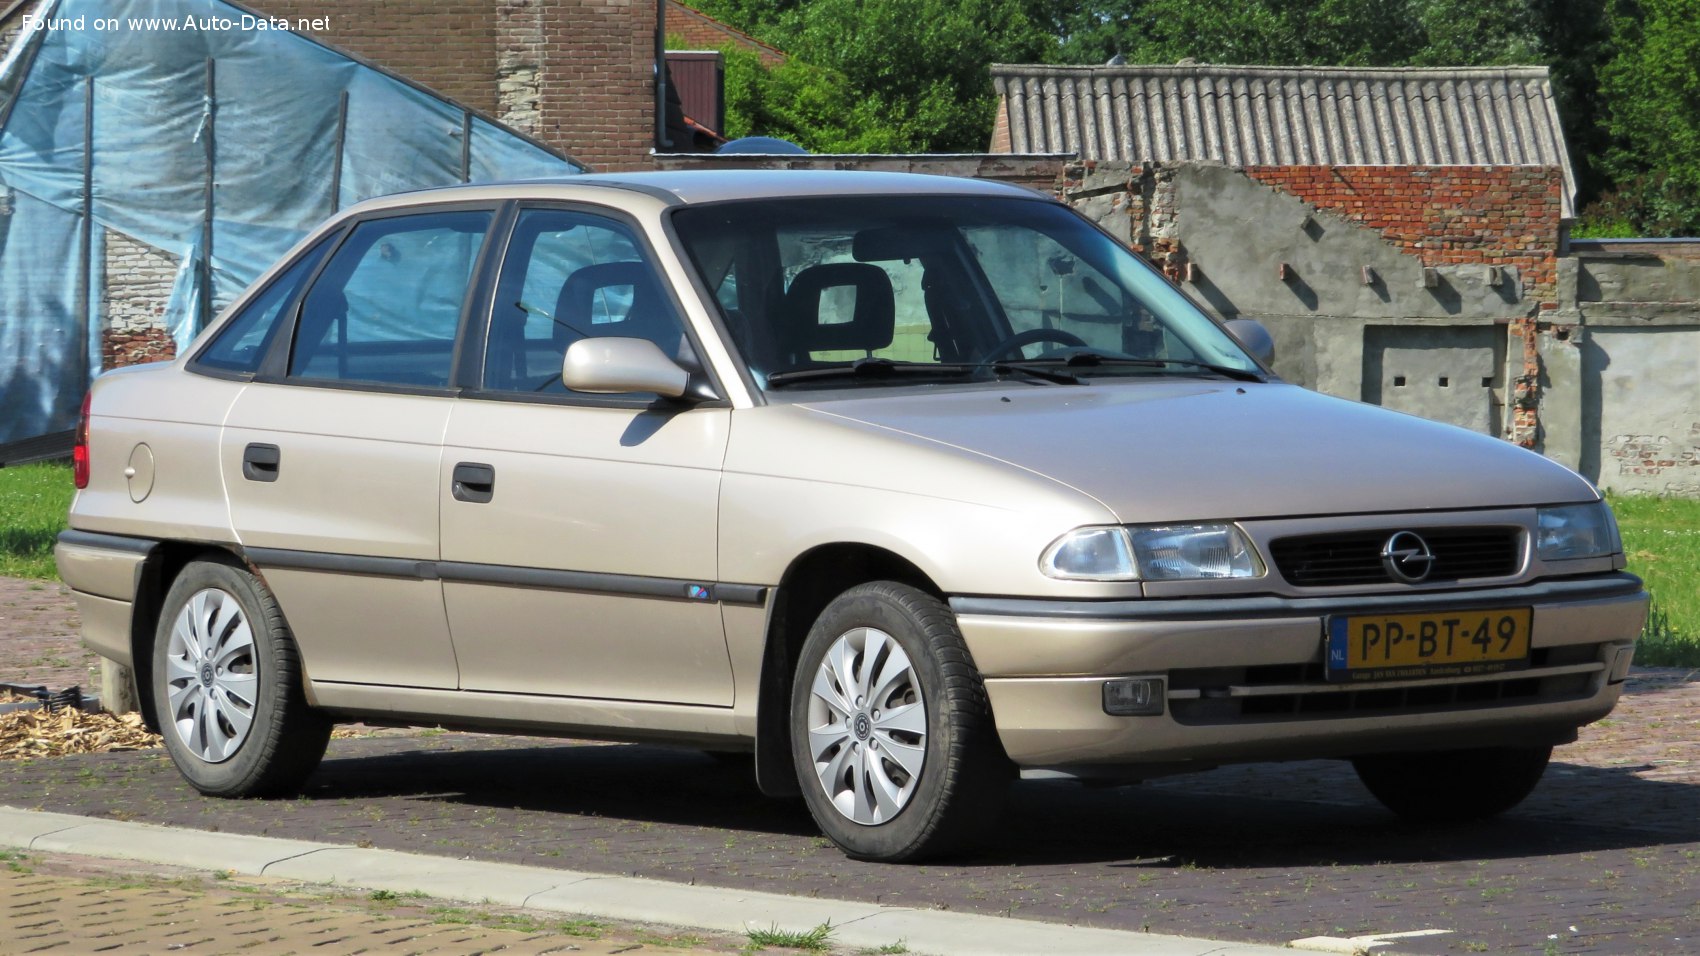 1996 Opel Astra F Classic Facelift 1994 1 8i Ecotec 16v 116 Hp Automatic Technical Specs Data Fuel Consumption Dimensions